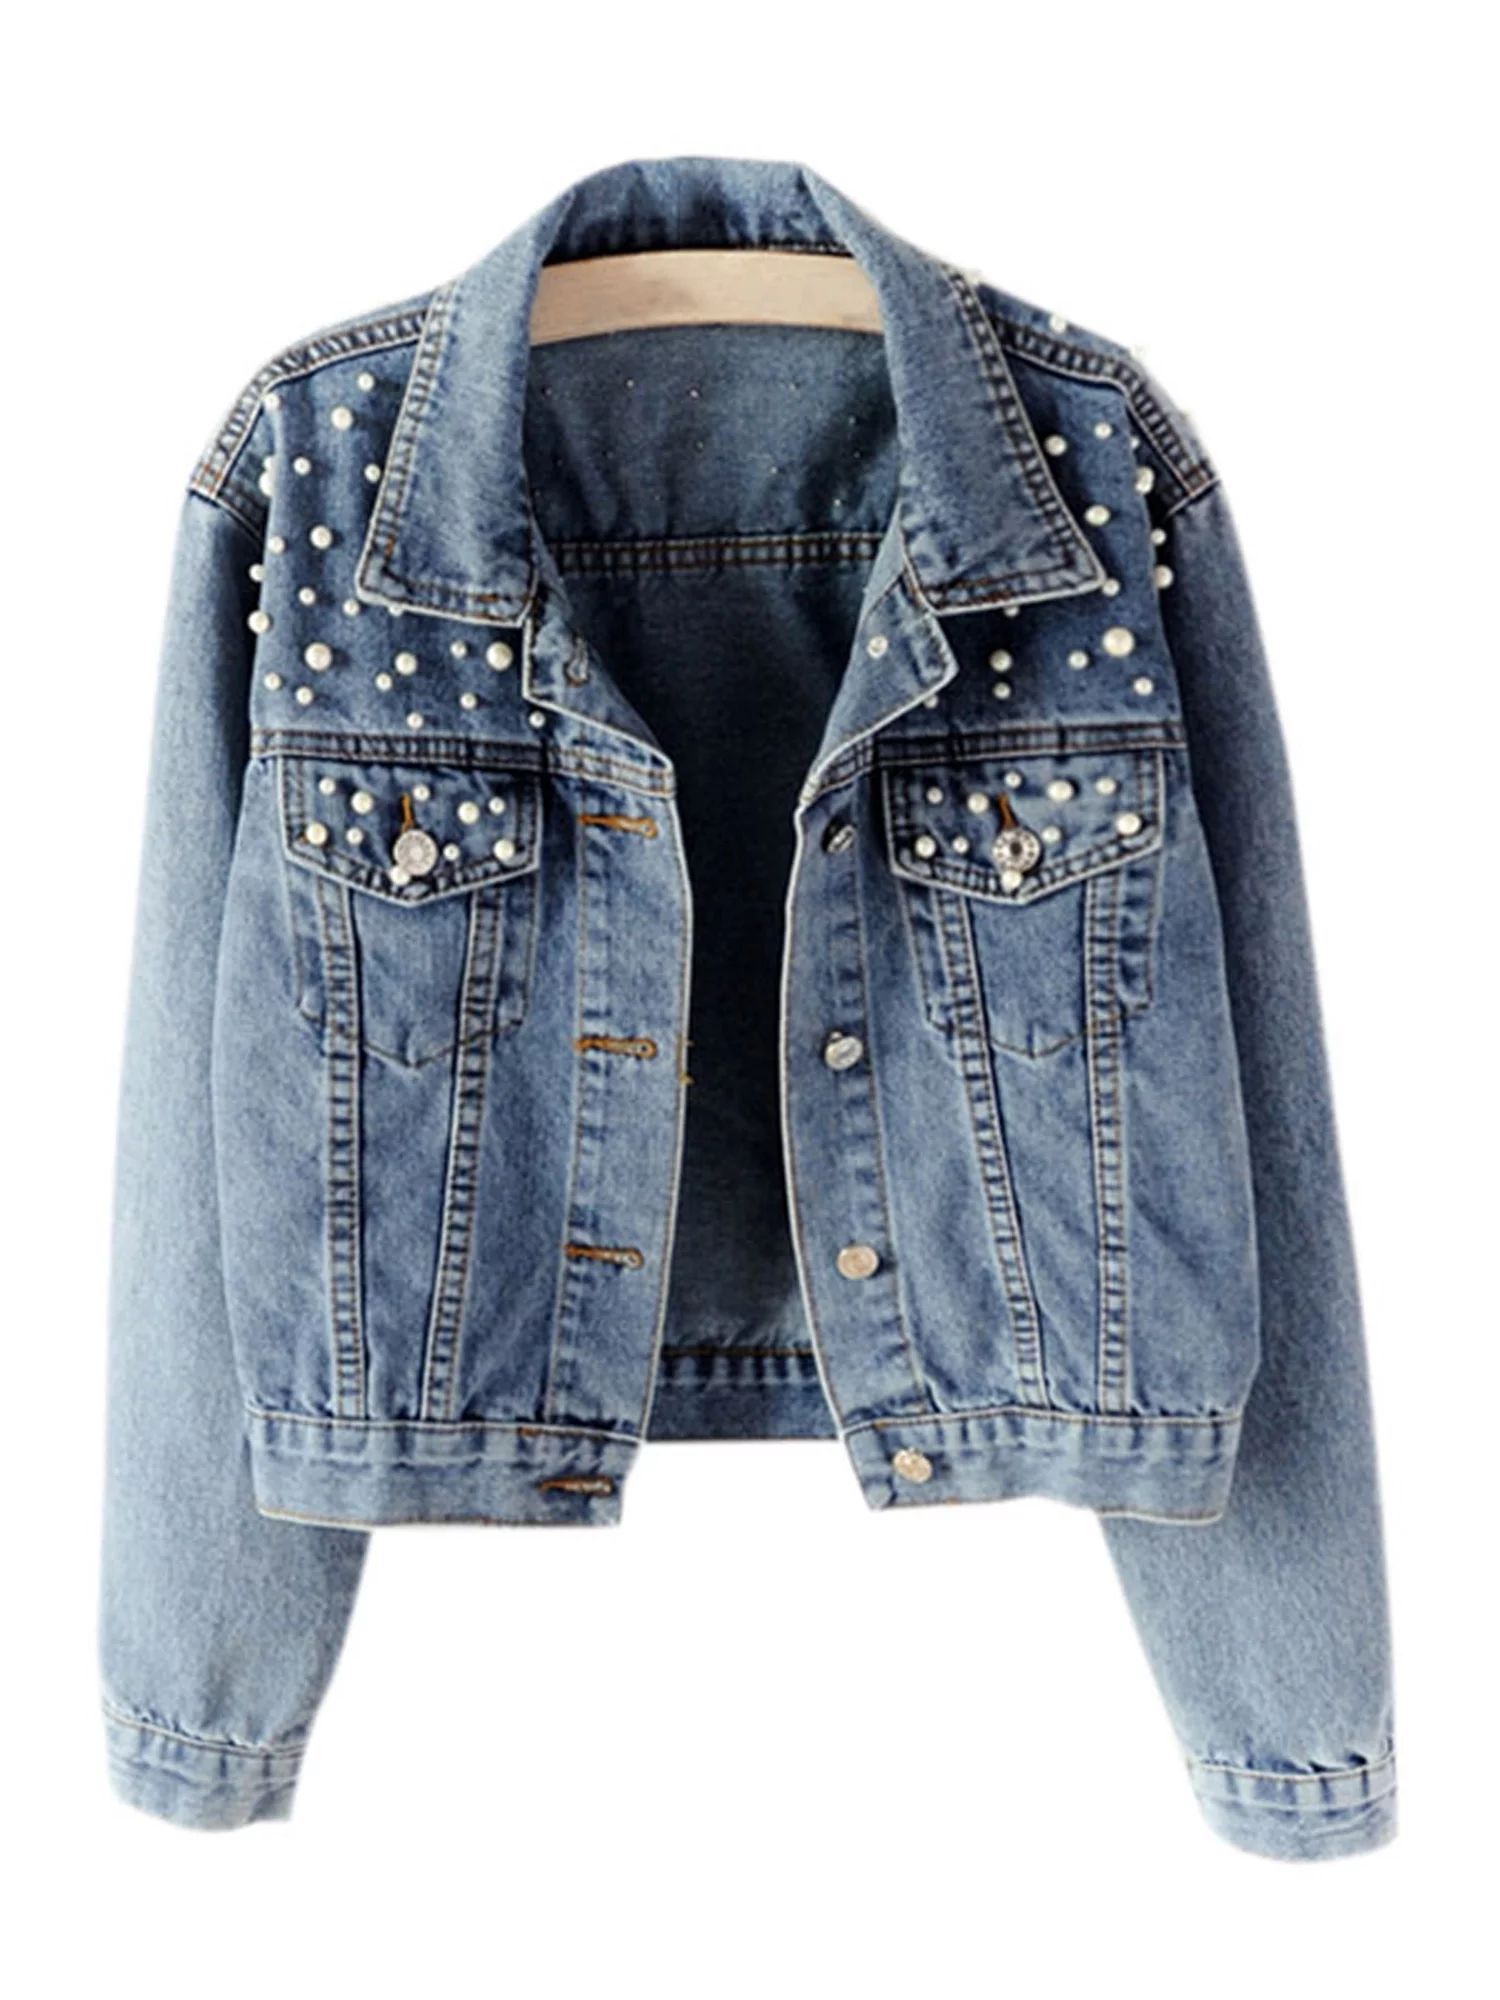 Plus Size Women's Pearl Denim Jacket Loose Fit Casual Biker Jeans Coat Outerwear | Walmart (US)